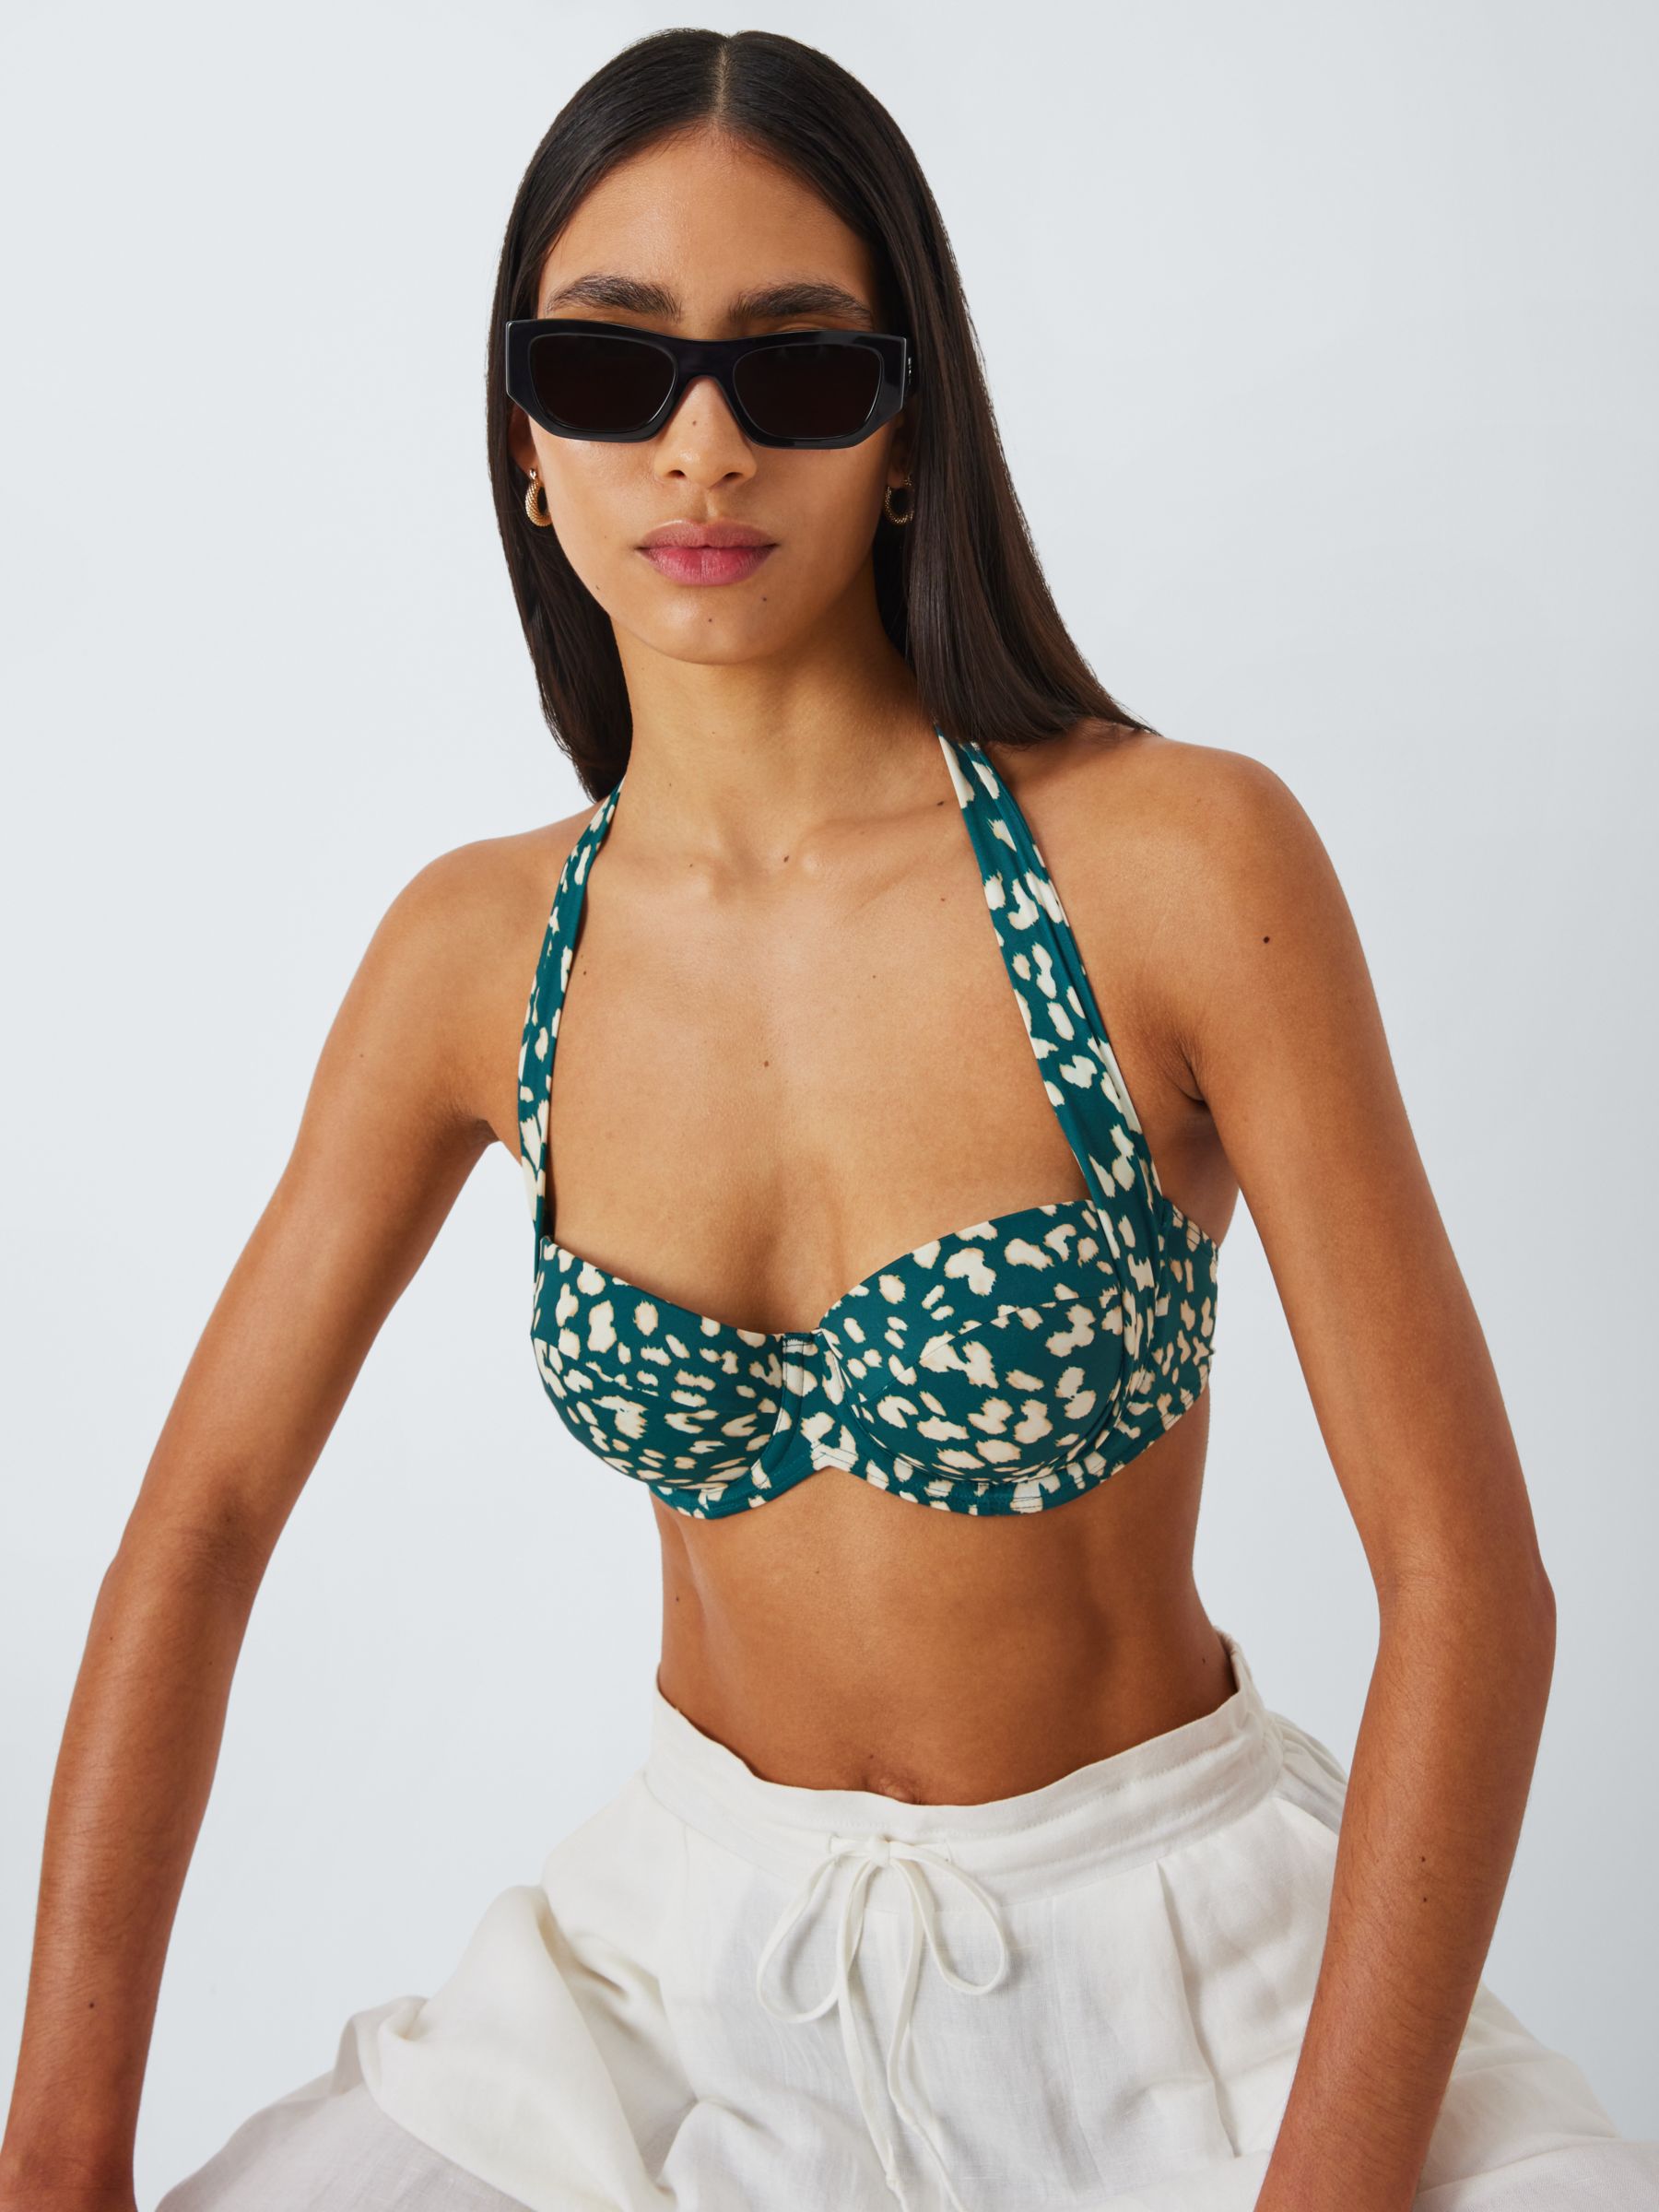 John Lewis Rio Animal Print Sling Halter Bikini Top, Teal, 32C